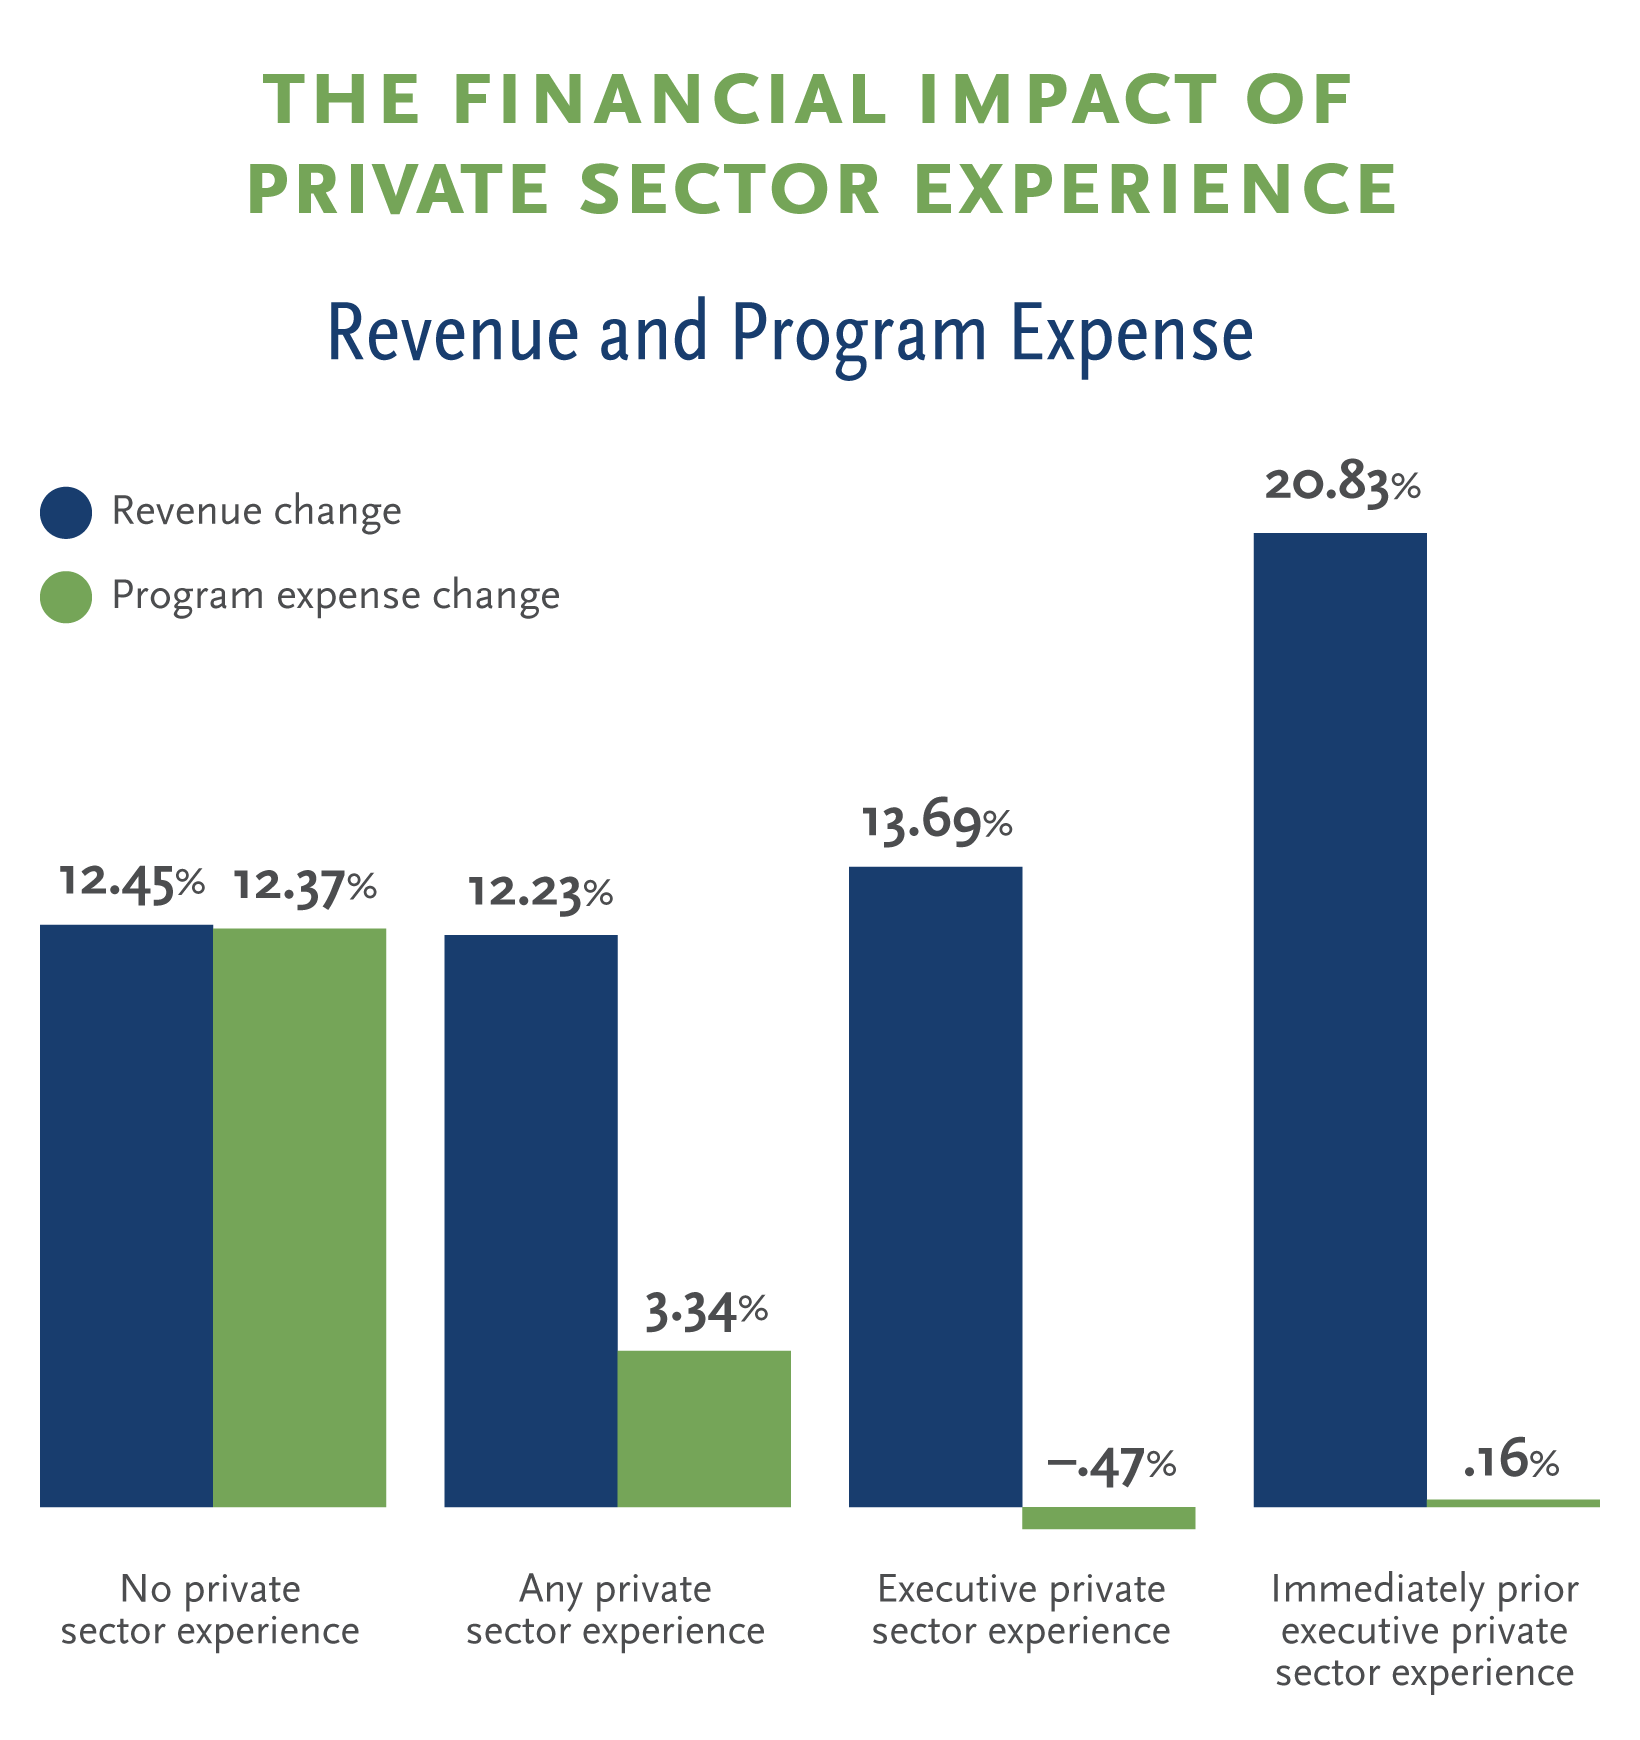 Revenue and Program Expense